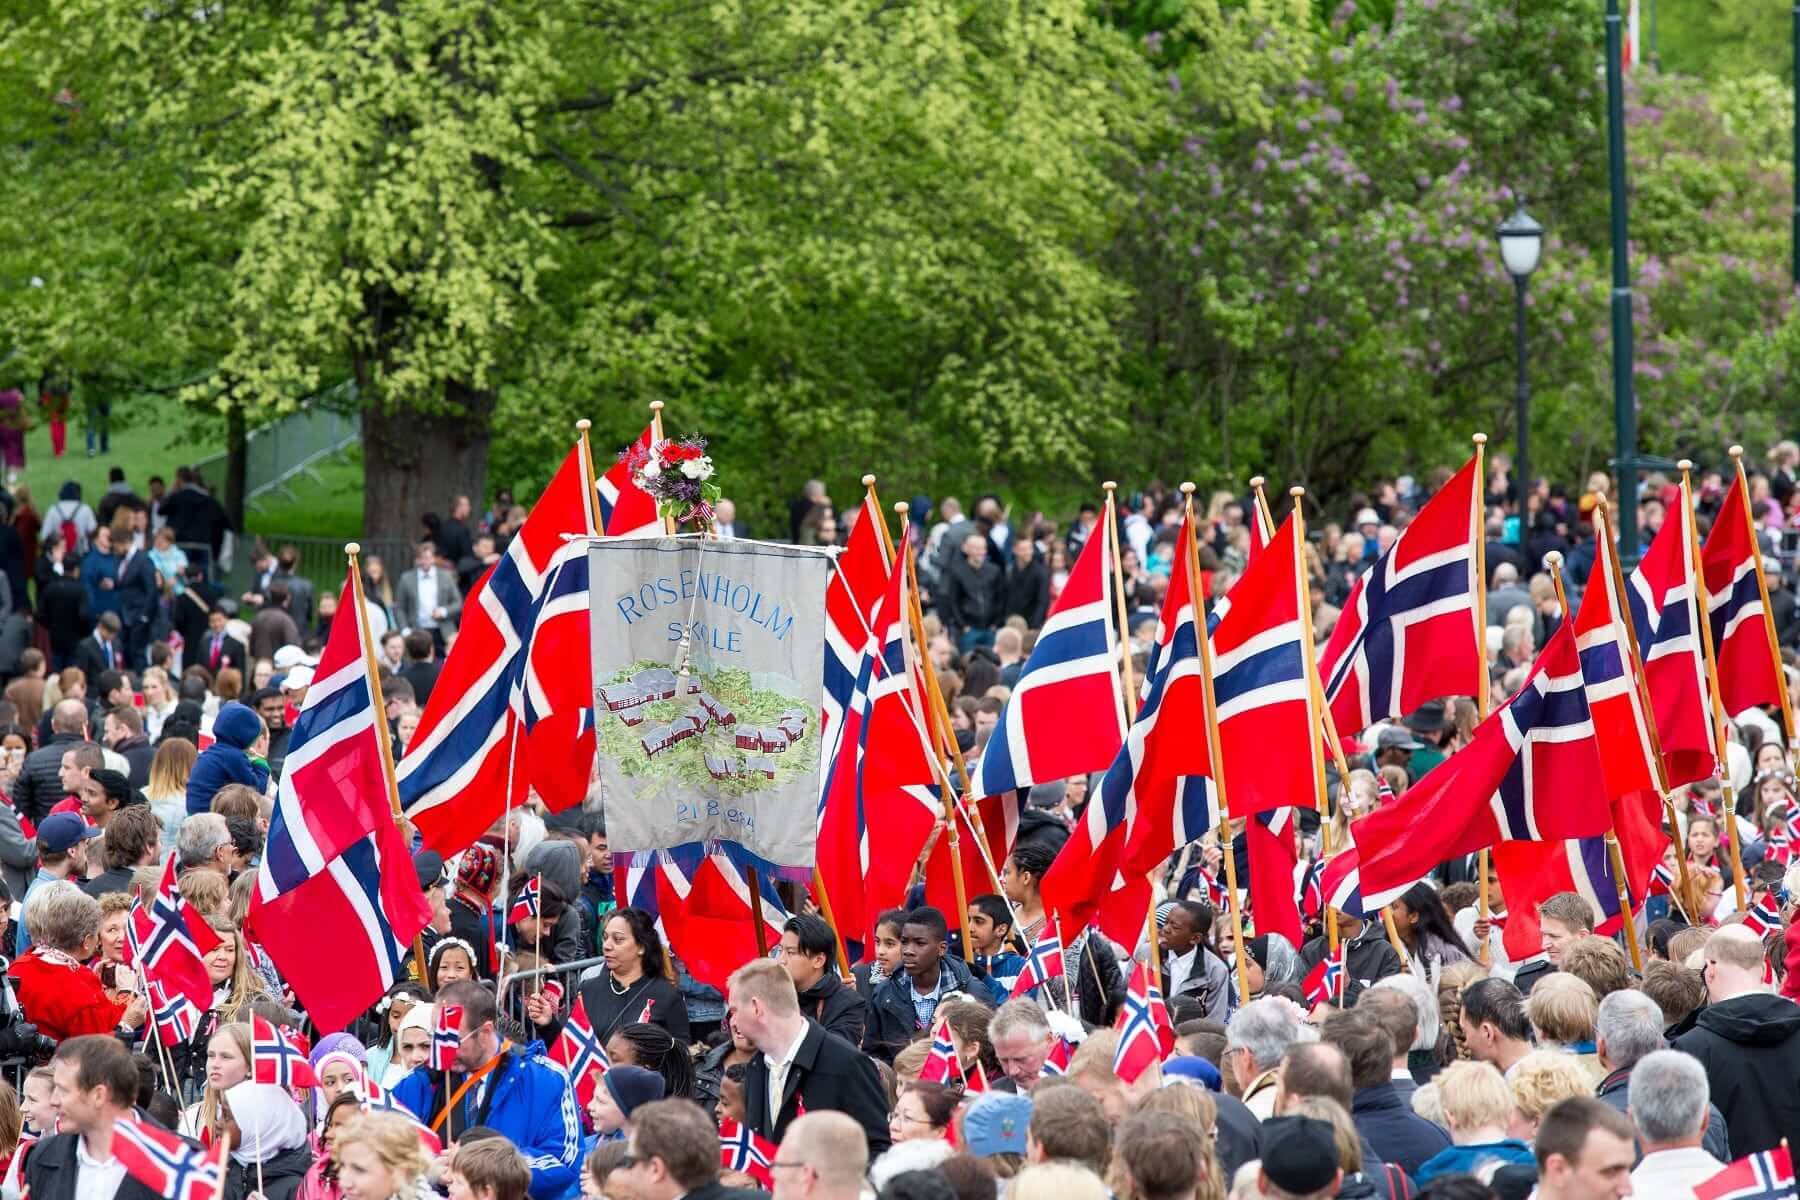 Séjour en Norvège fête nationale - Paul D Smith  Shutterstock.com